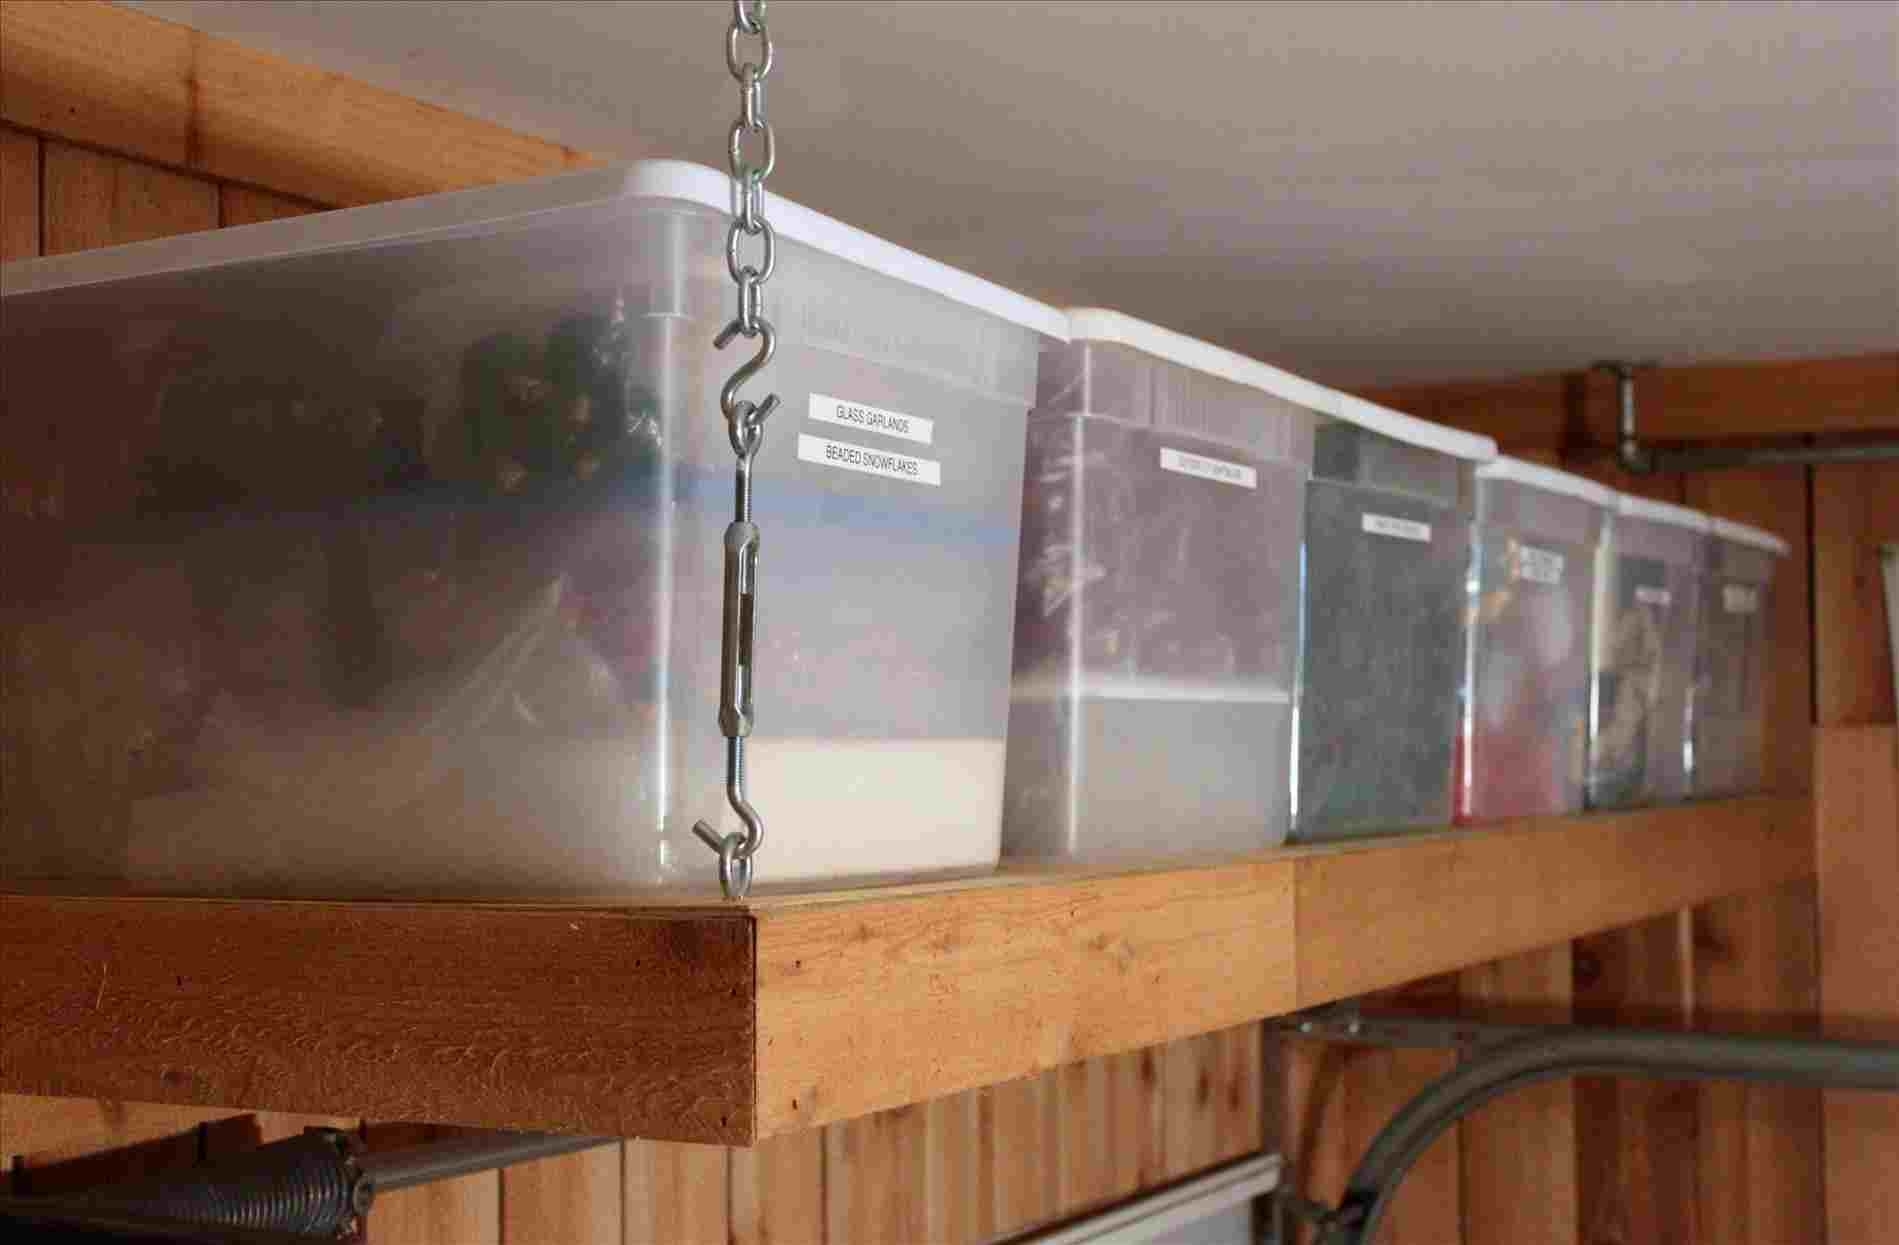 Garage Storage Lift System